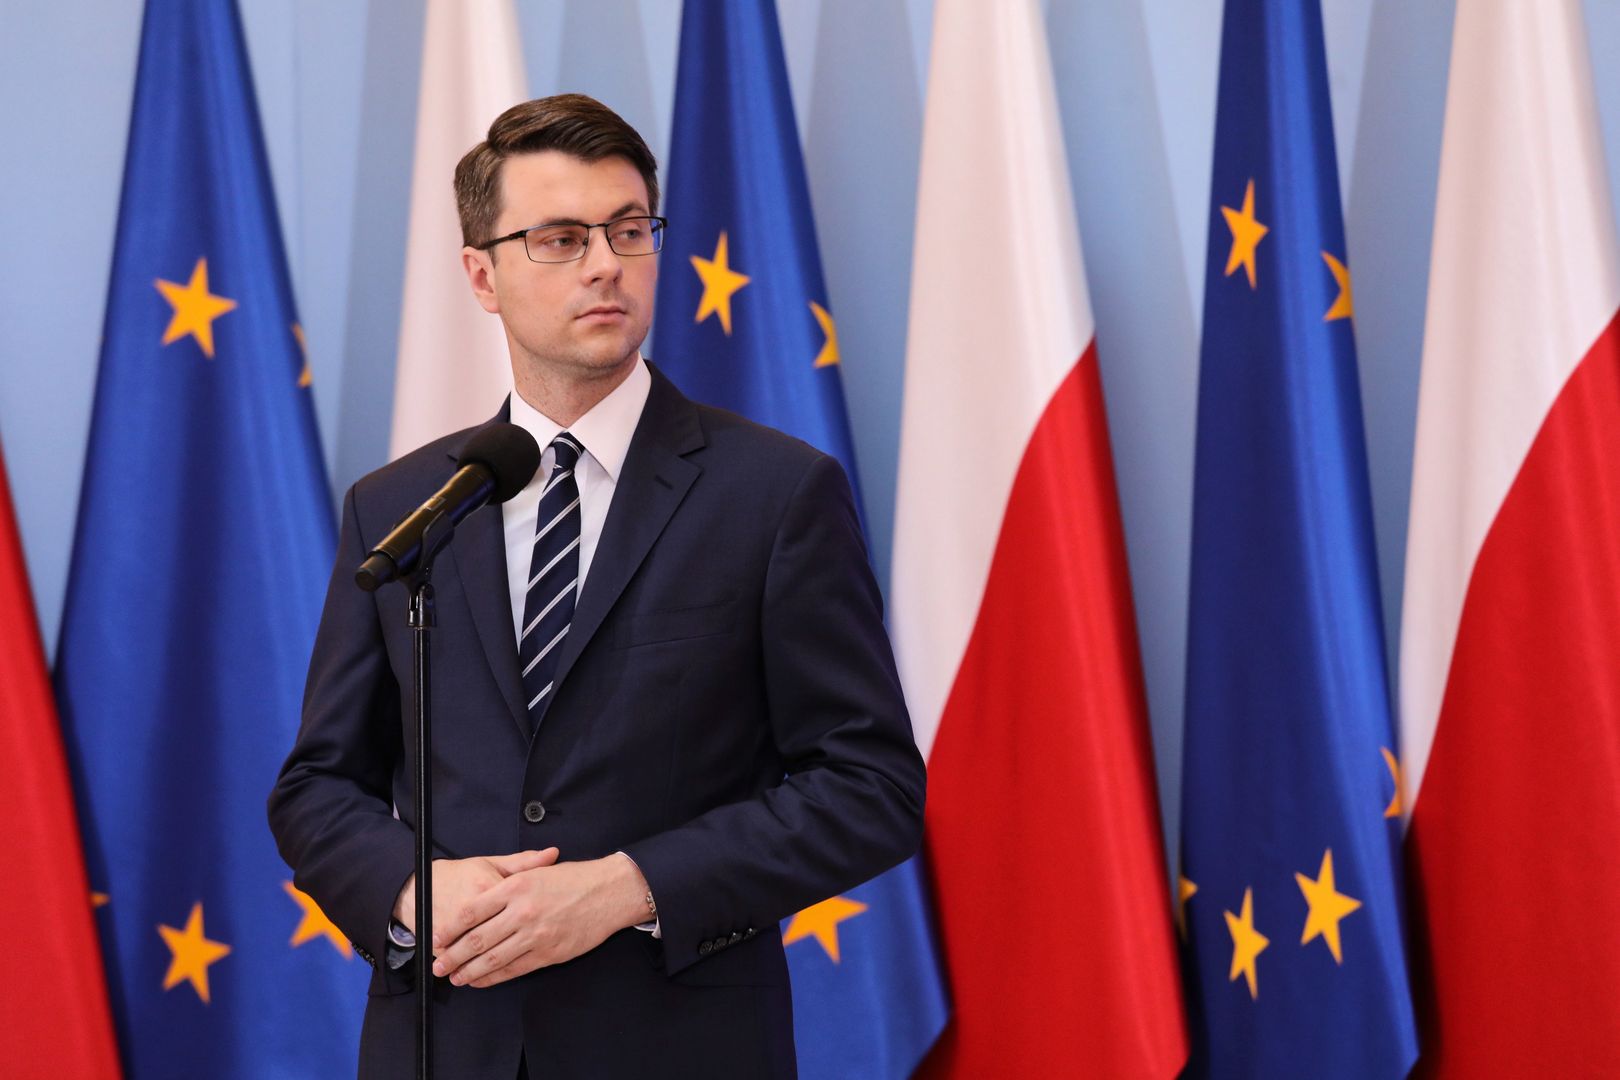 Piotr Müller skomentował niepochlebną dla rządu wypowiedź Olgi Tokarczuk